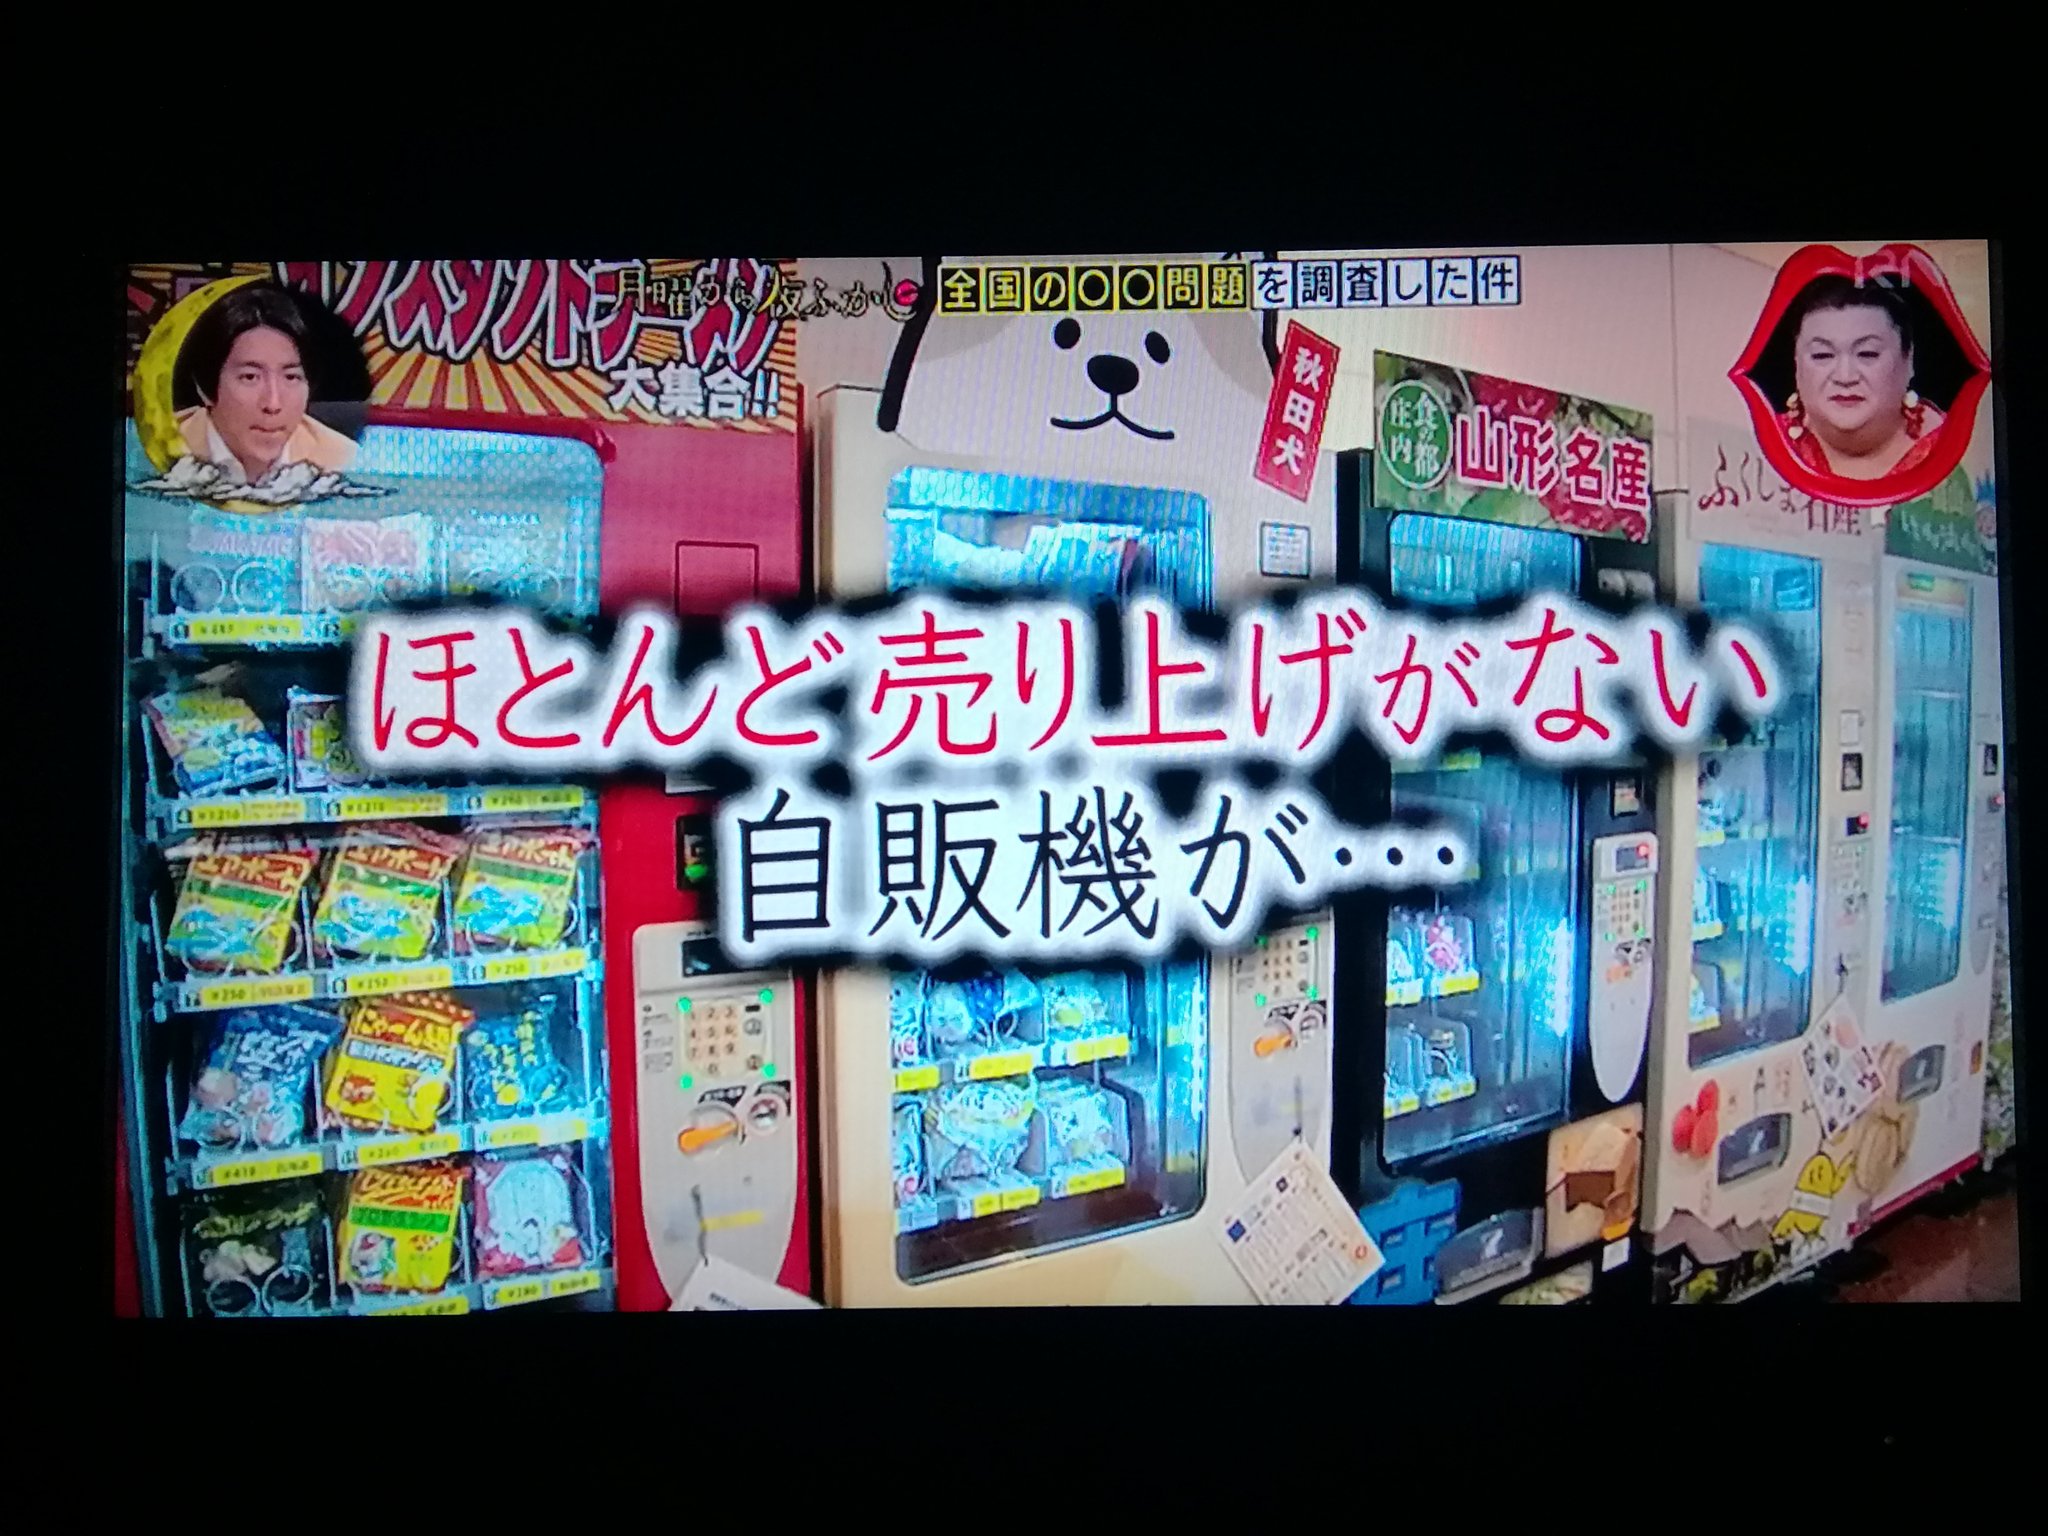 元めがね野郎 月曜から夜ふかし 岡山県総社市の小学校カレーは 自動販売機では ほとんど 売り上げがないらしい T Co Eljtflj6lh Twitter